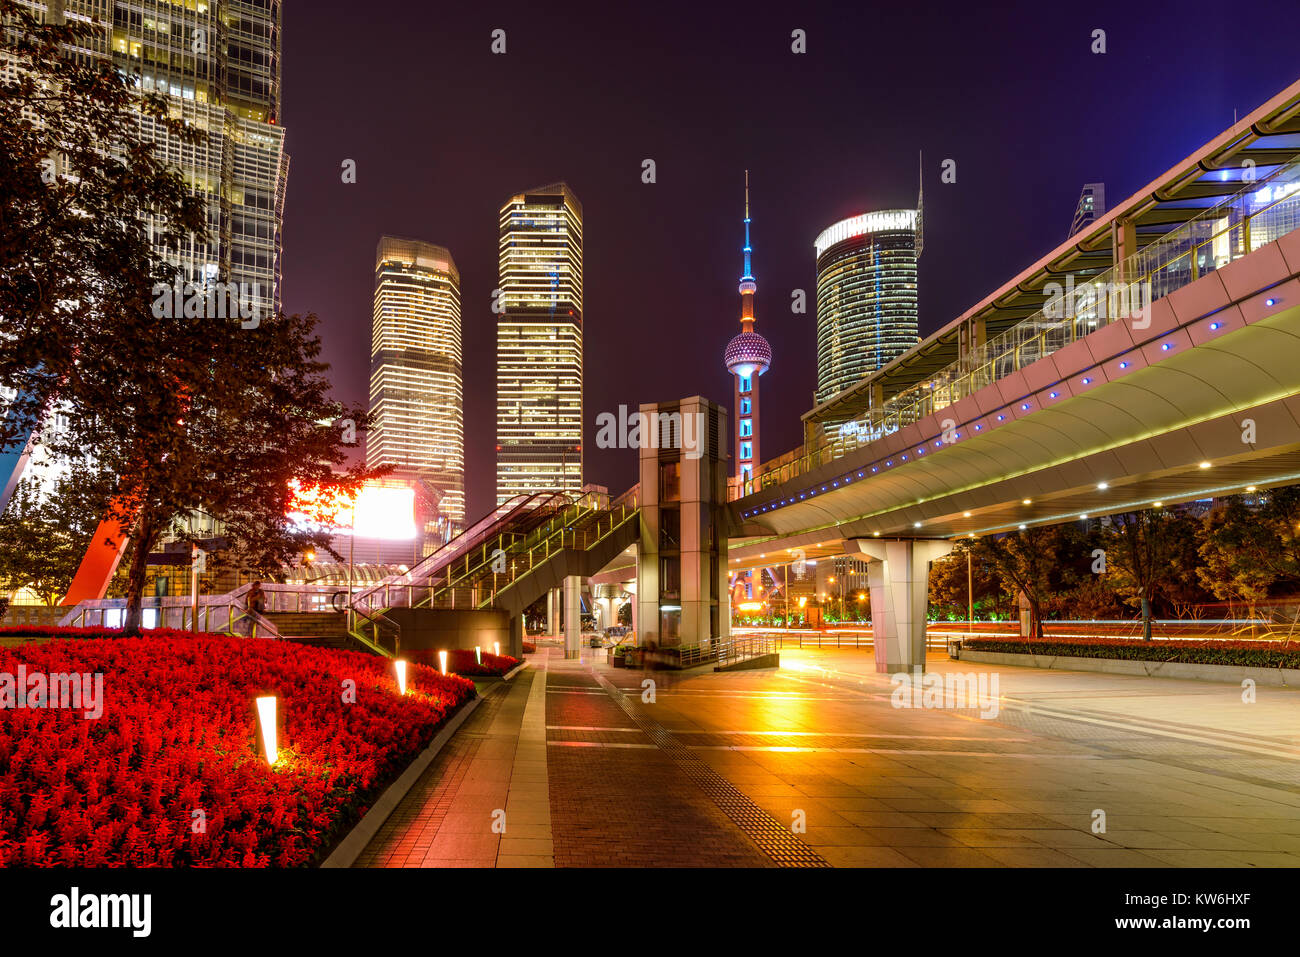 Century Avenue bei Nacht - eine Nacht Blick auf breite, helle, farbenfrohe und moderne Bürgersteig der Century Avenue, eine große Straße bei Lujiazui, Shanghai, China. Stockfoto